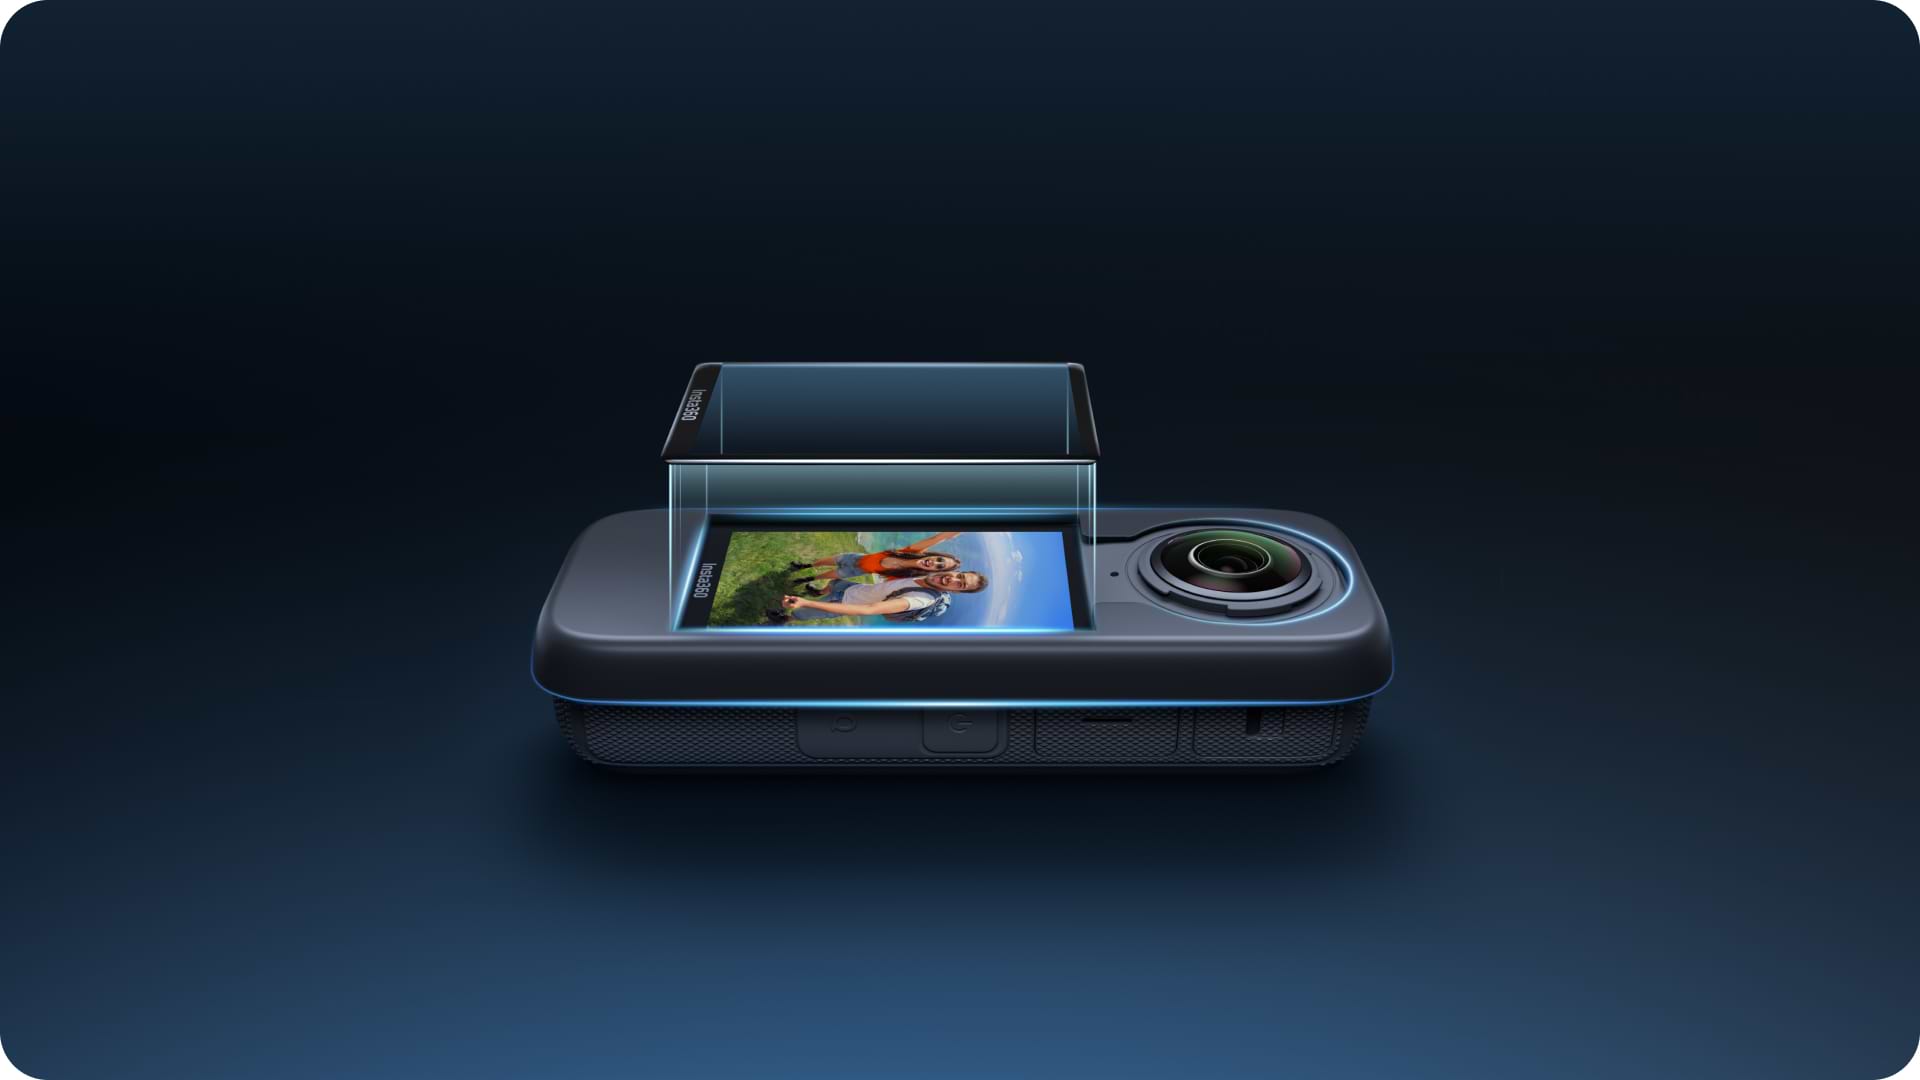 מגן מסך זכוכית למצלמת אקסטרים Insta360 X4